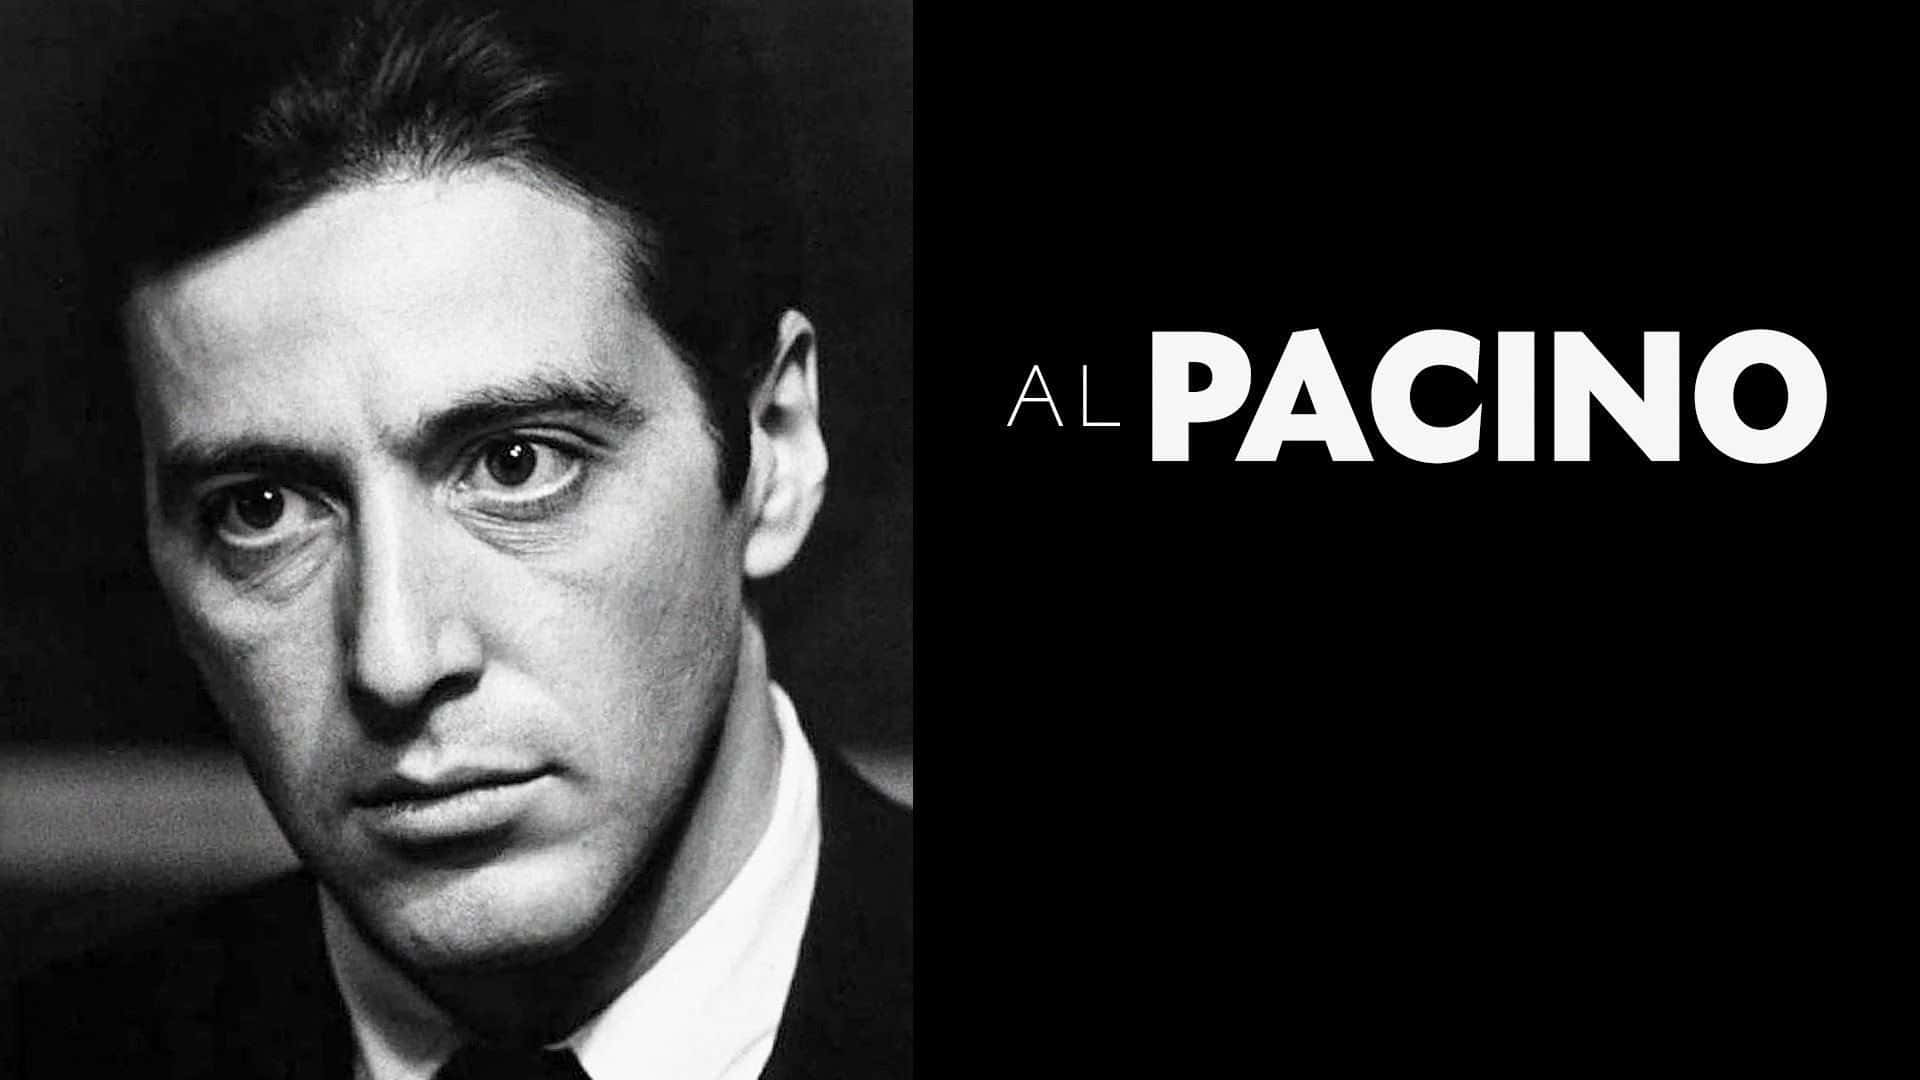 Al Pacino as Tony Montana in "Scarface"